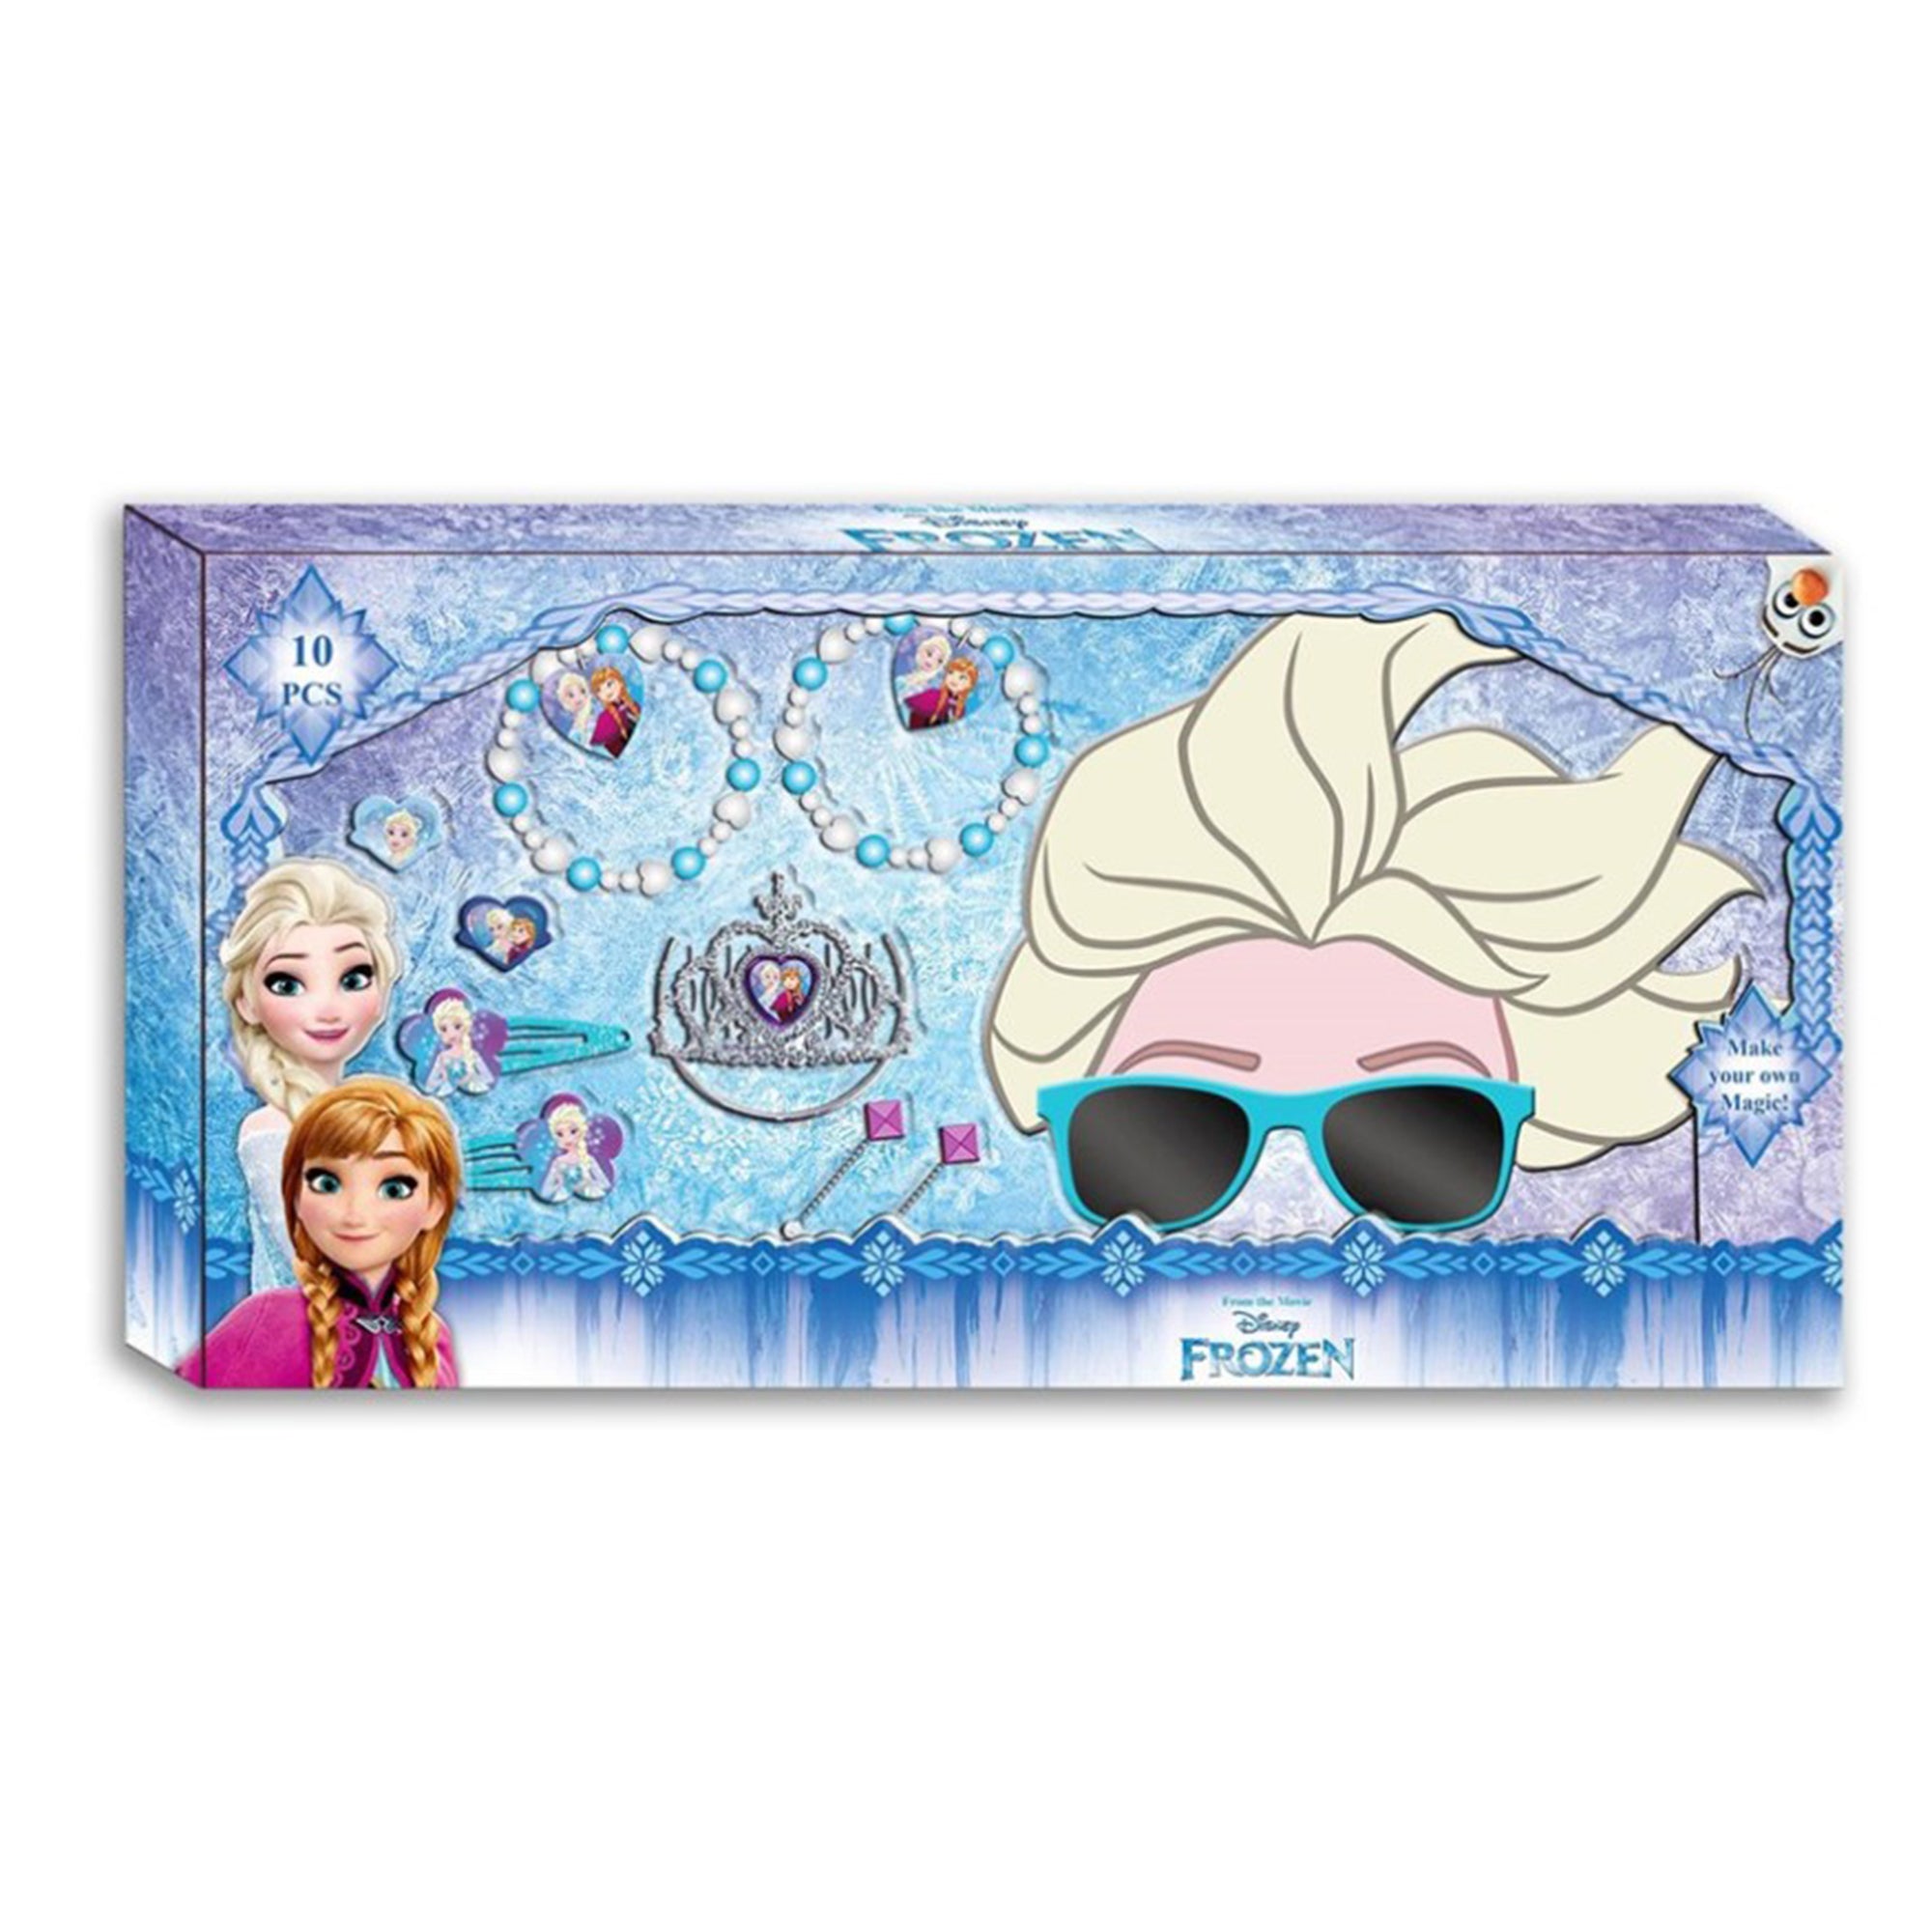 Kit gioielli Disney Frozen 10 pz occhiali accessori e braccialetti 2707